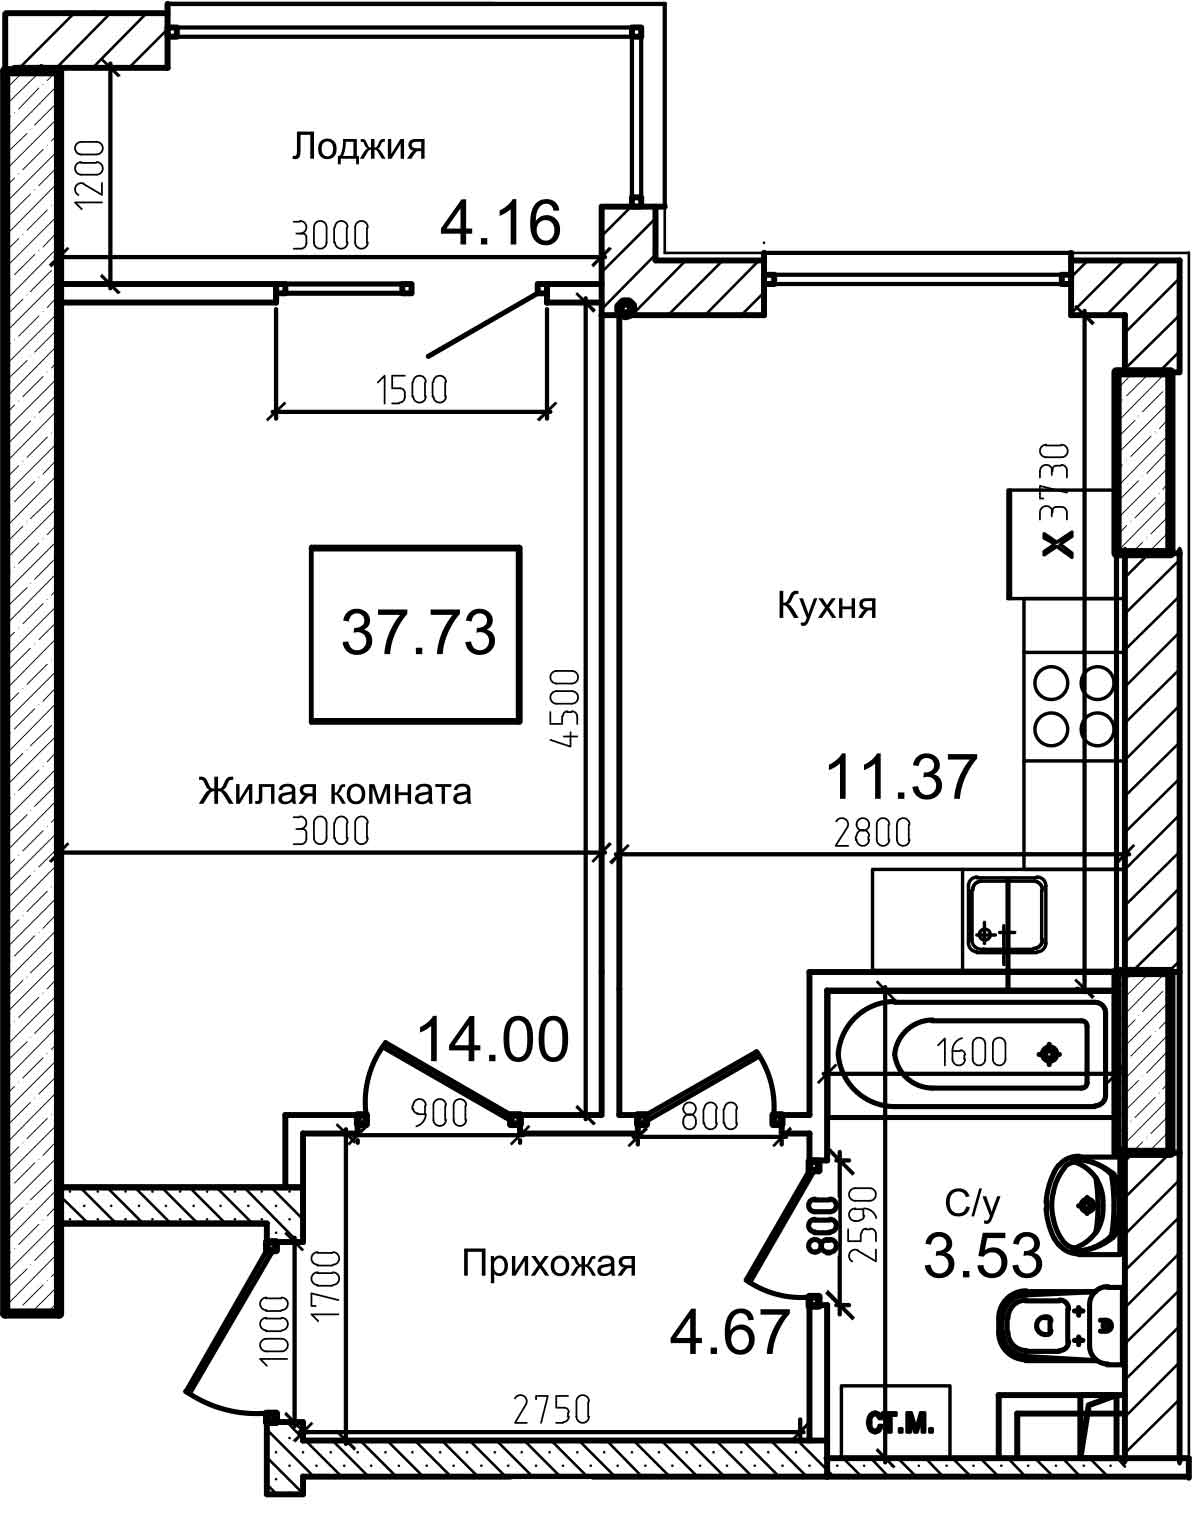 Планування 1-к квартира площею 37.5м2, AB-08-01/00011.